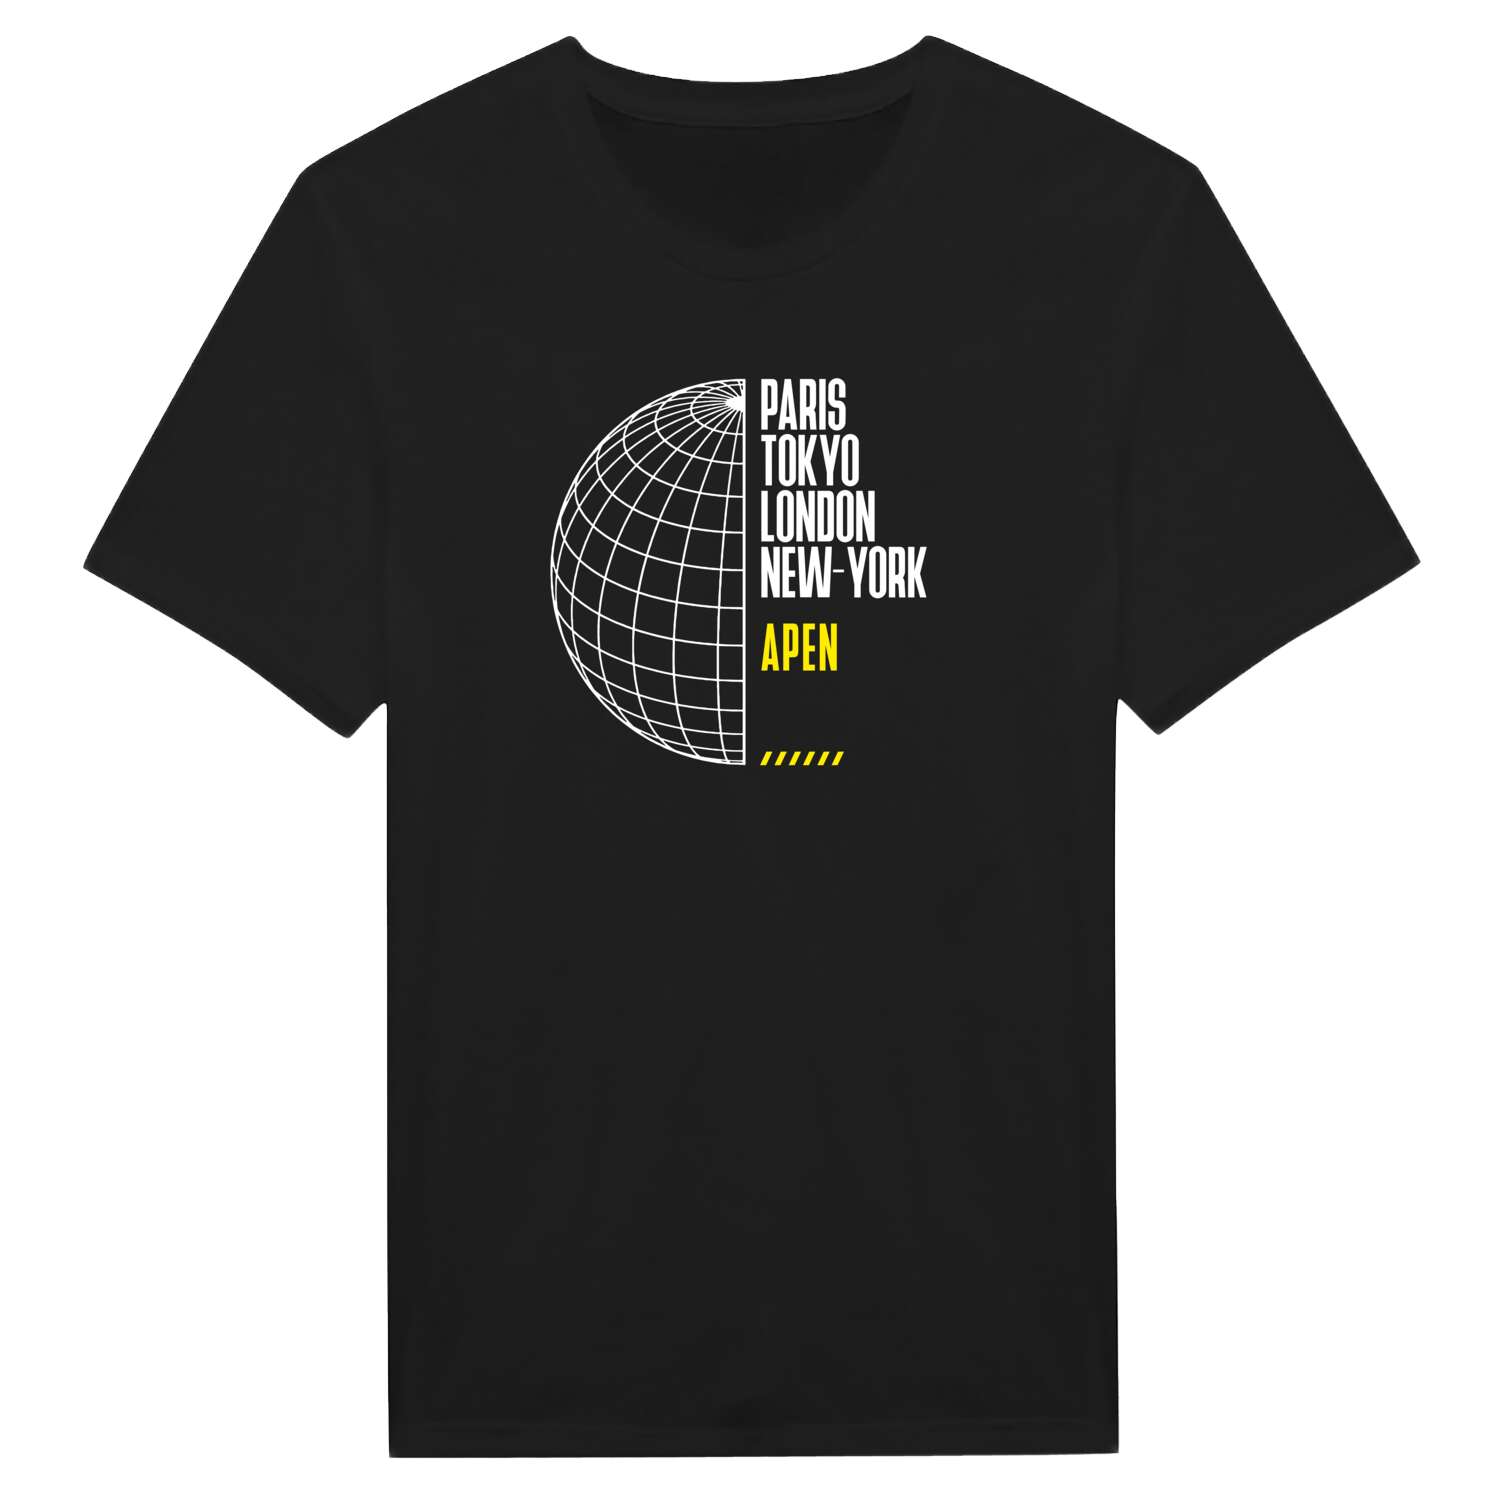 Apen T-Shirt »Paris Tokyo London«